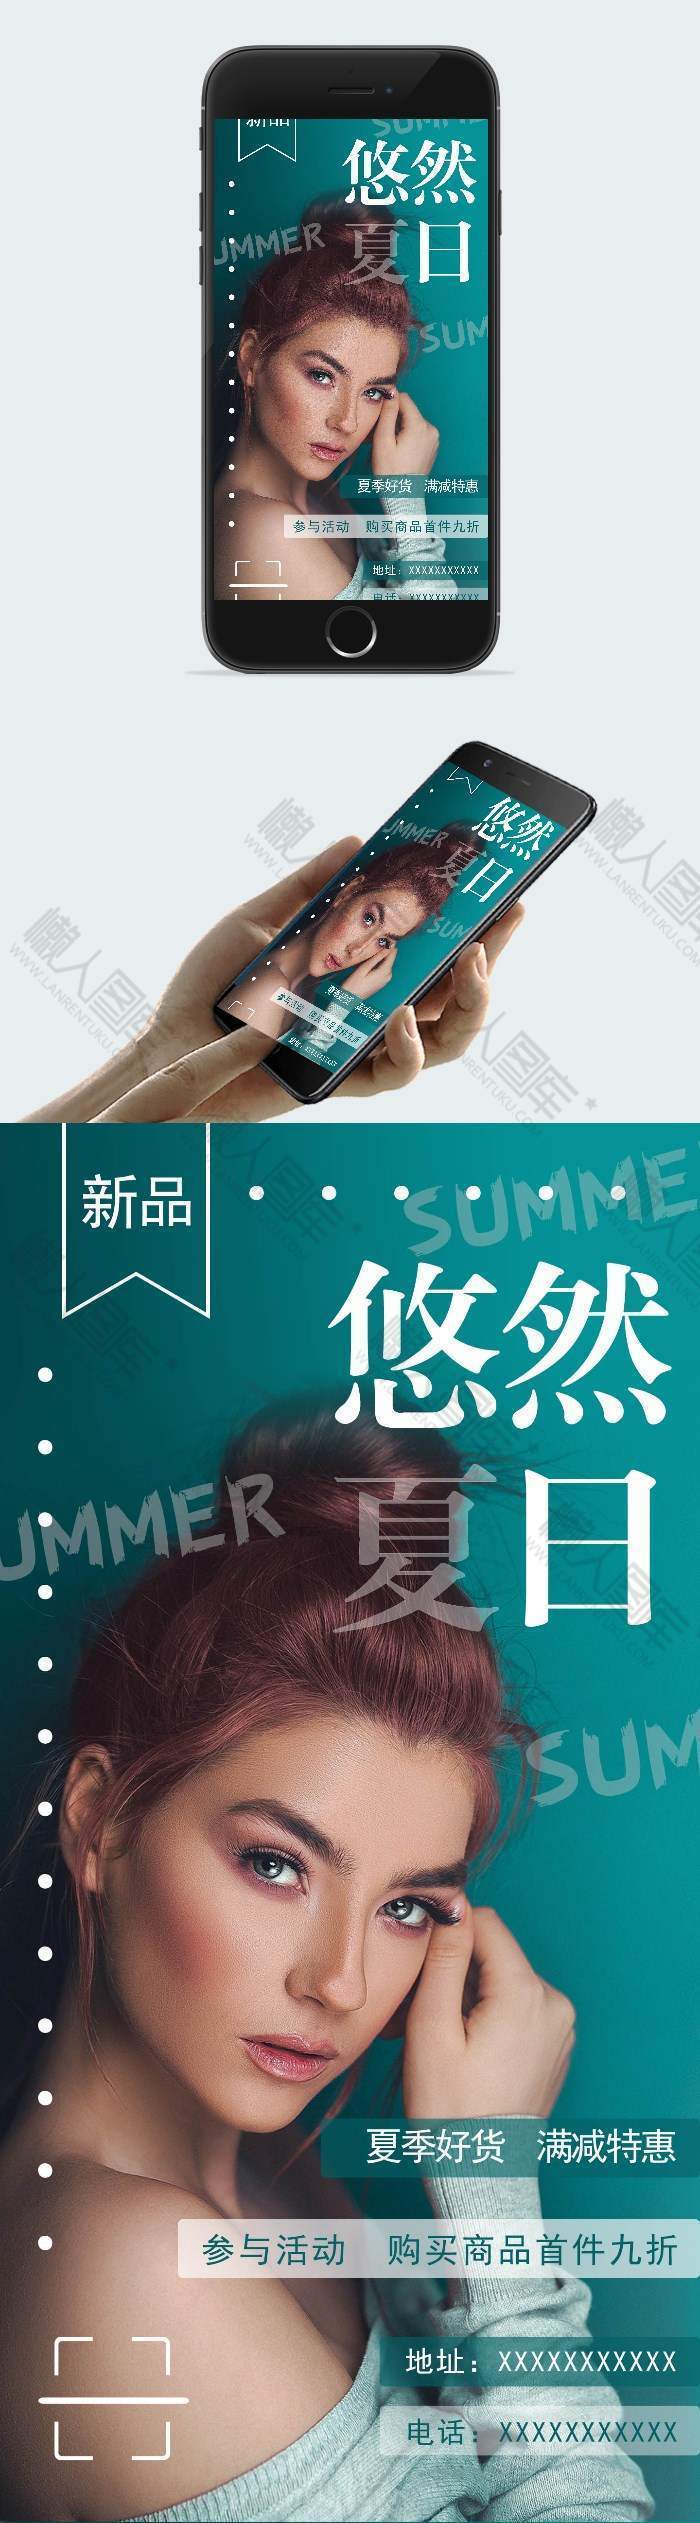 时尚夏季促销宣传海报